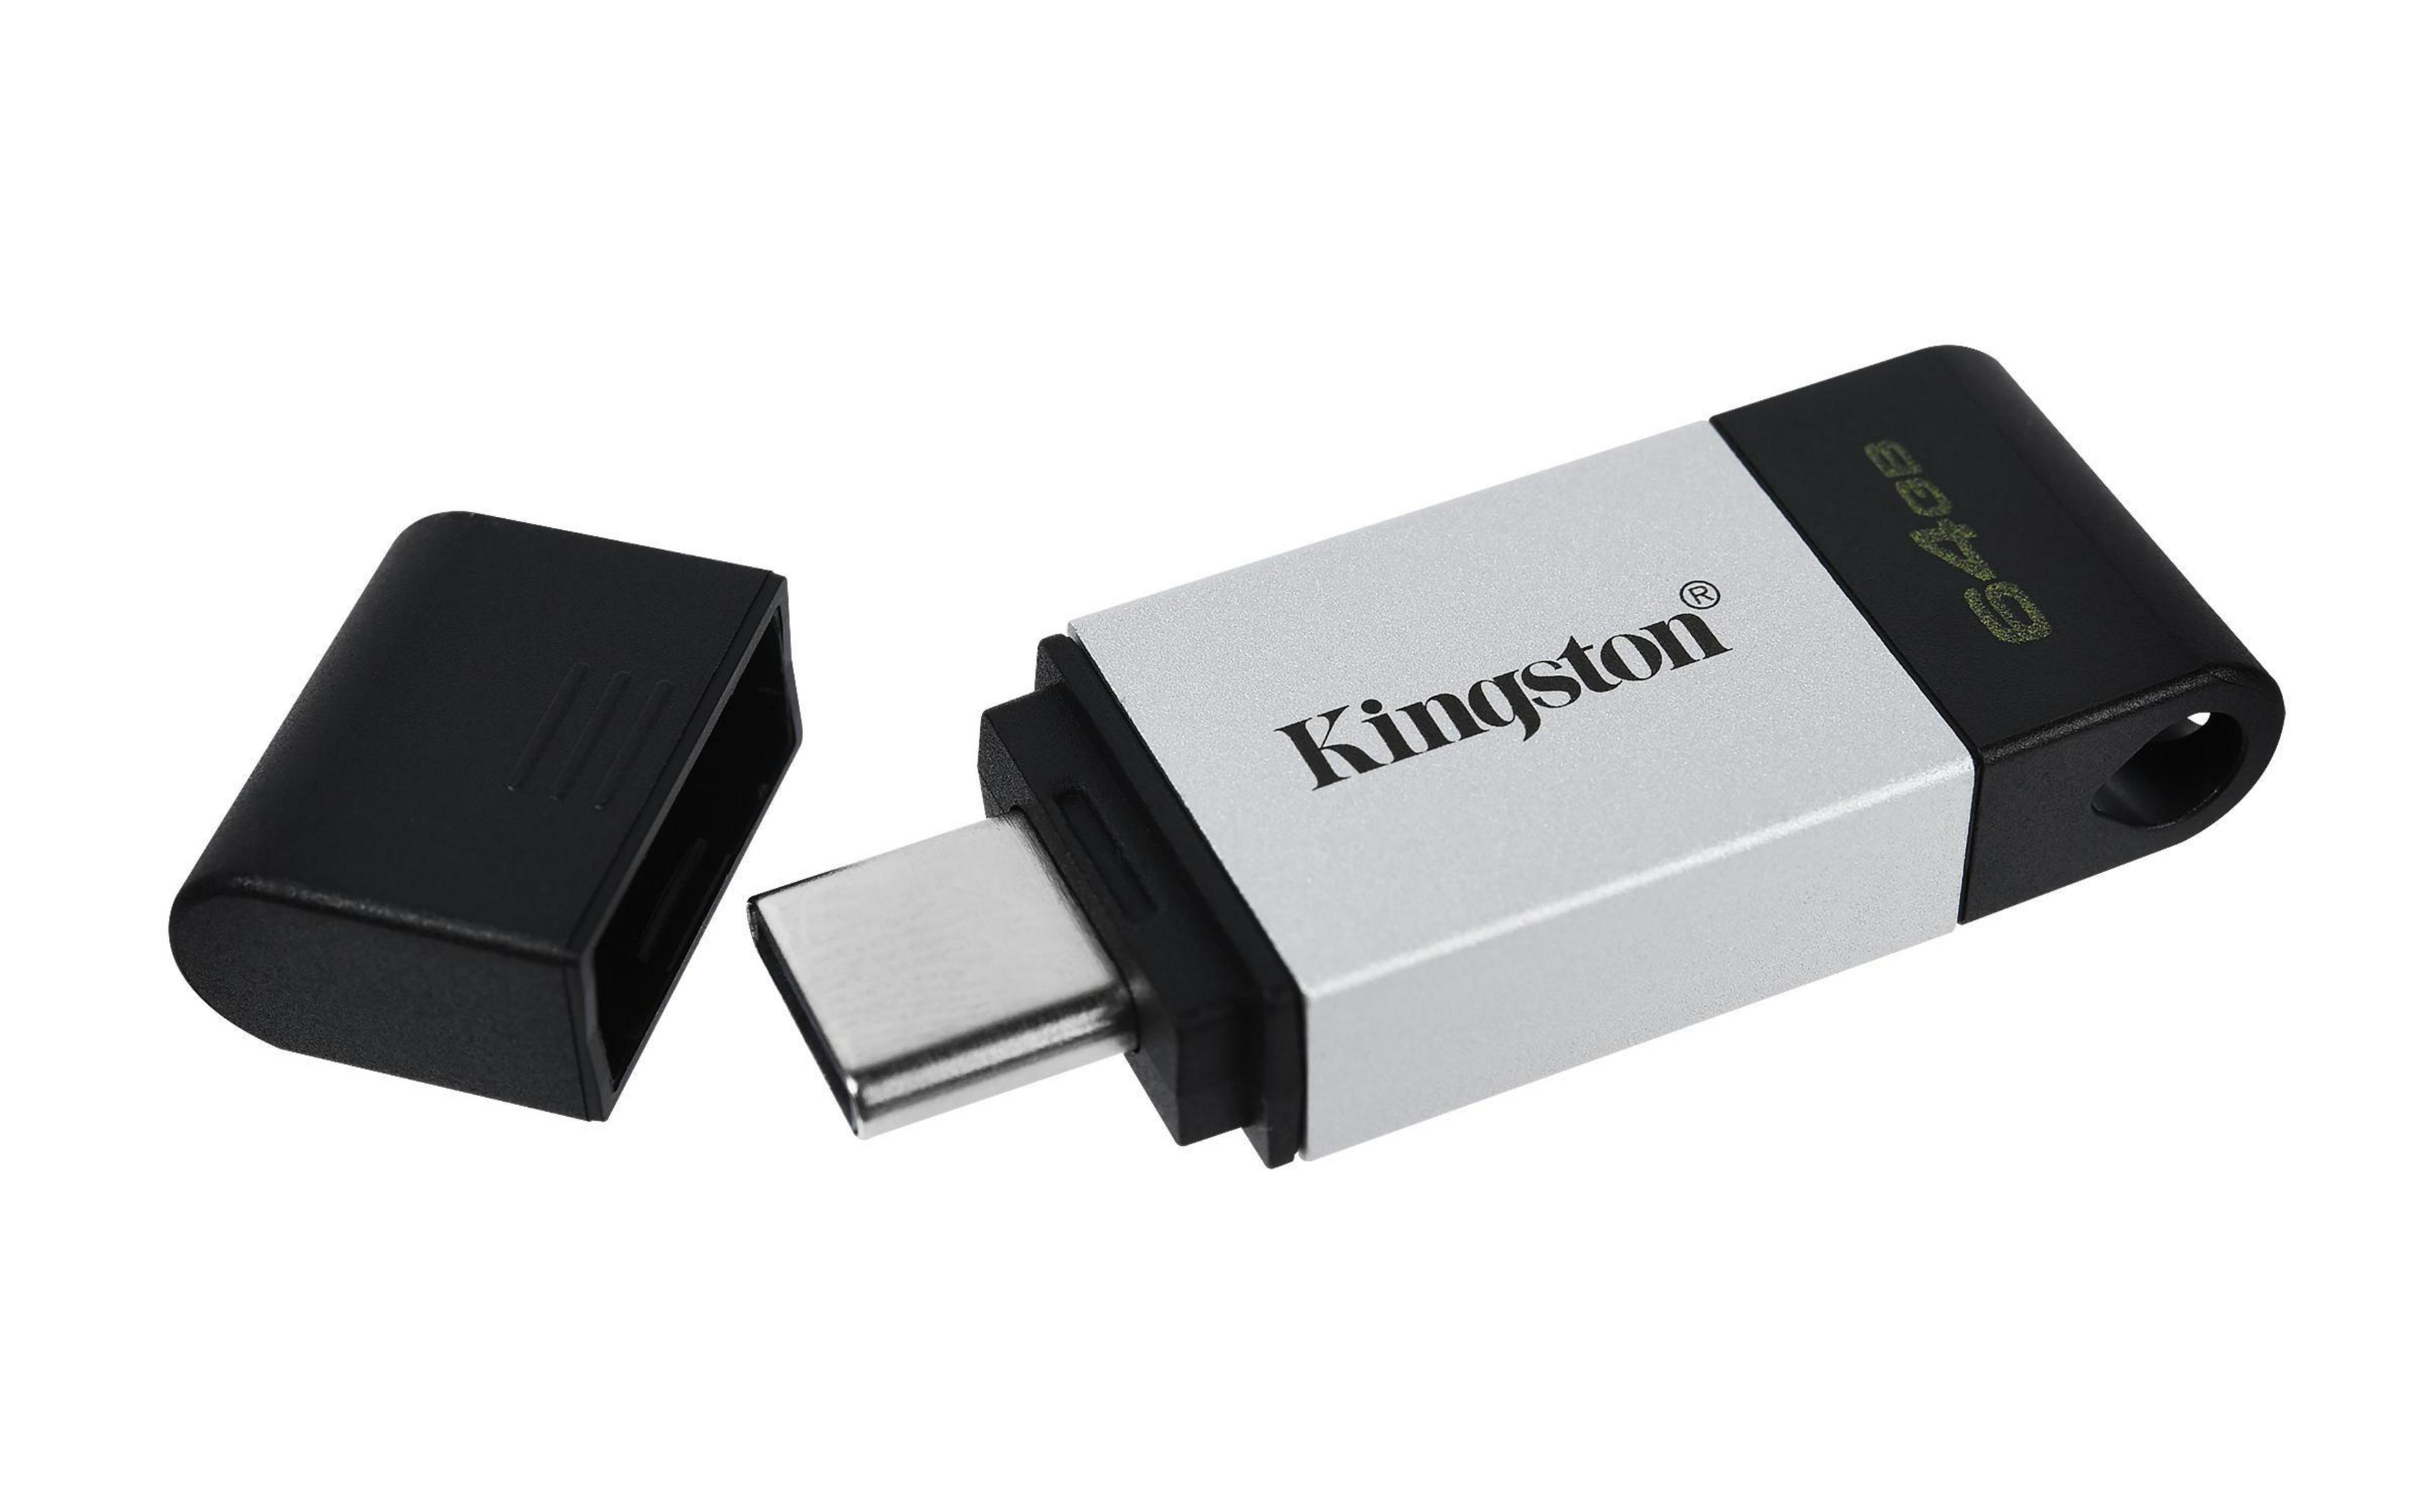 DT80/64GB (Schwarz, 64 Stick GB) KINGSTON USB